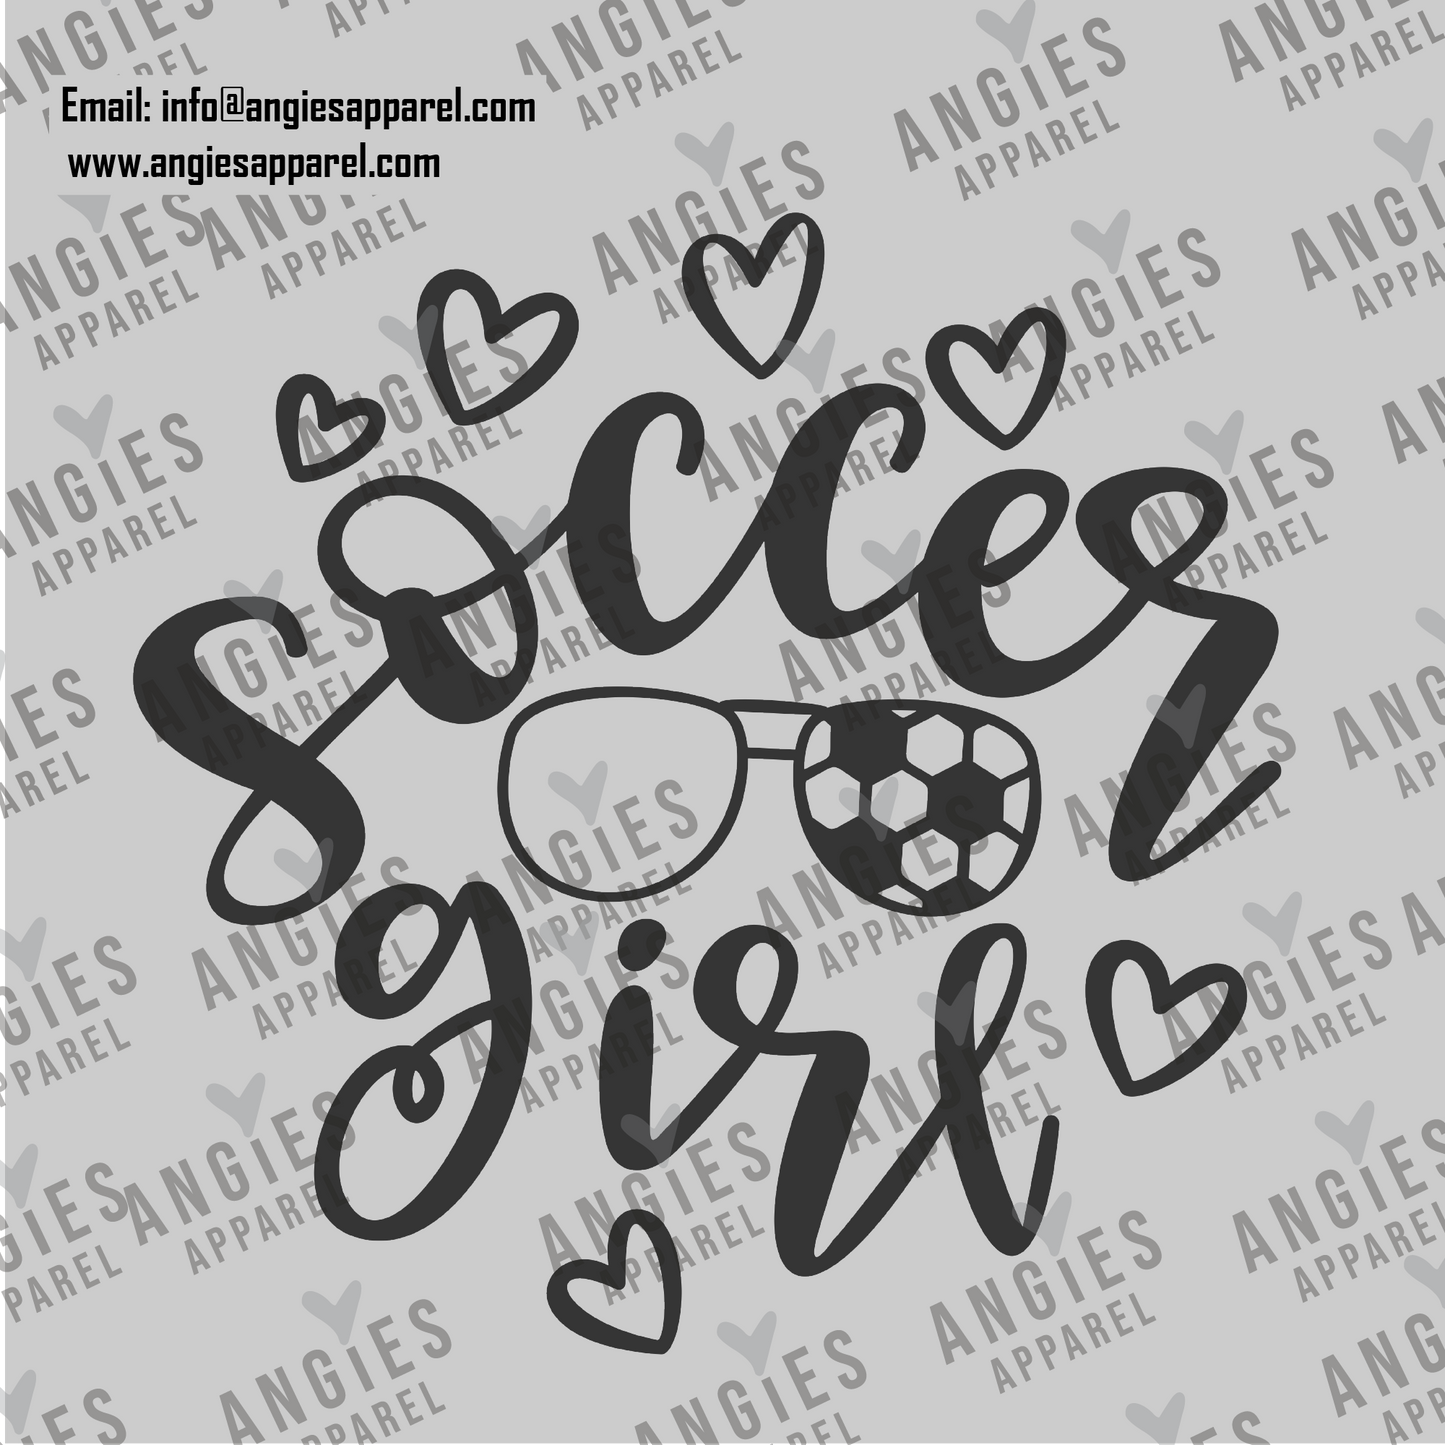 16. Soccer Girl